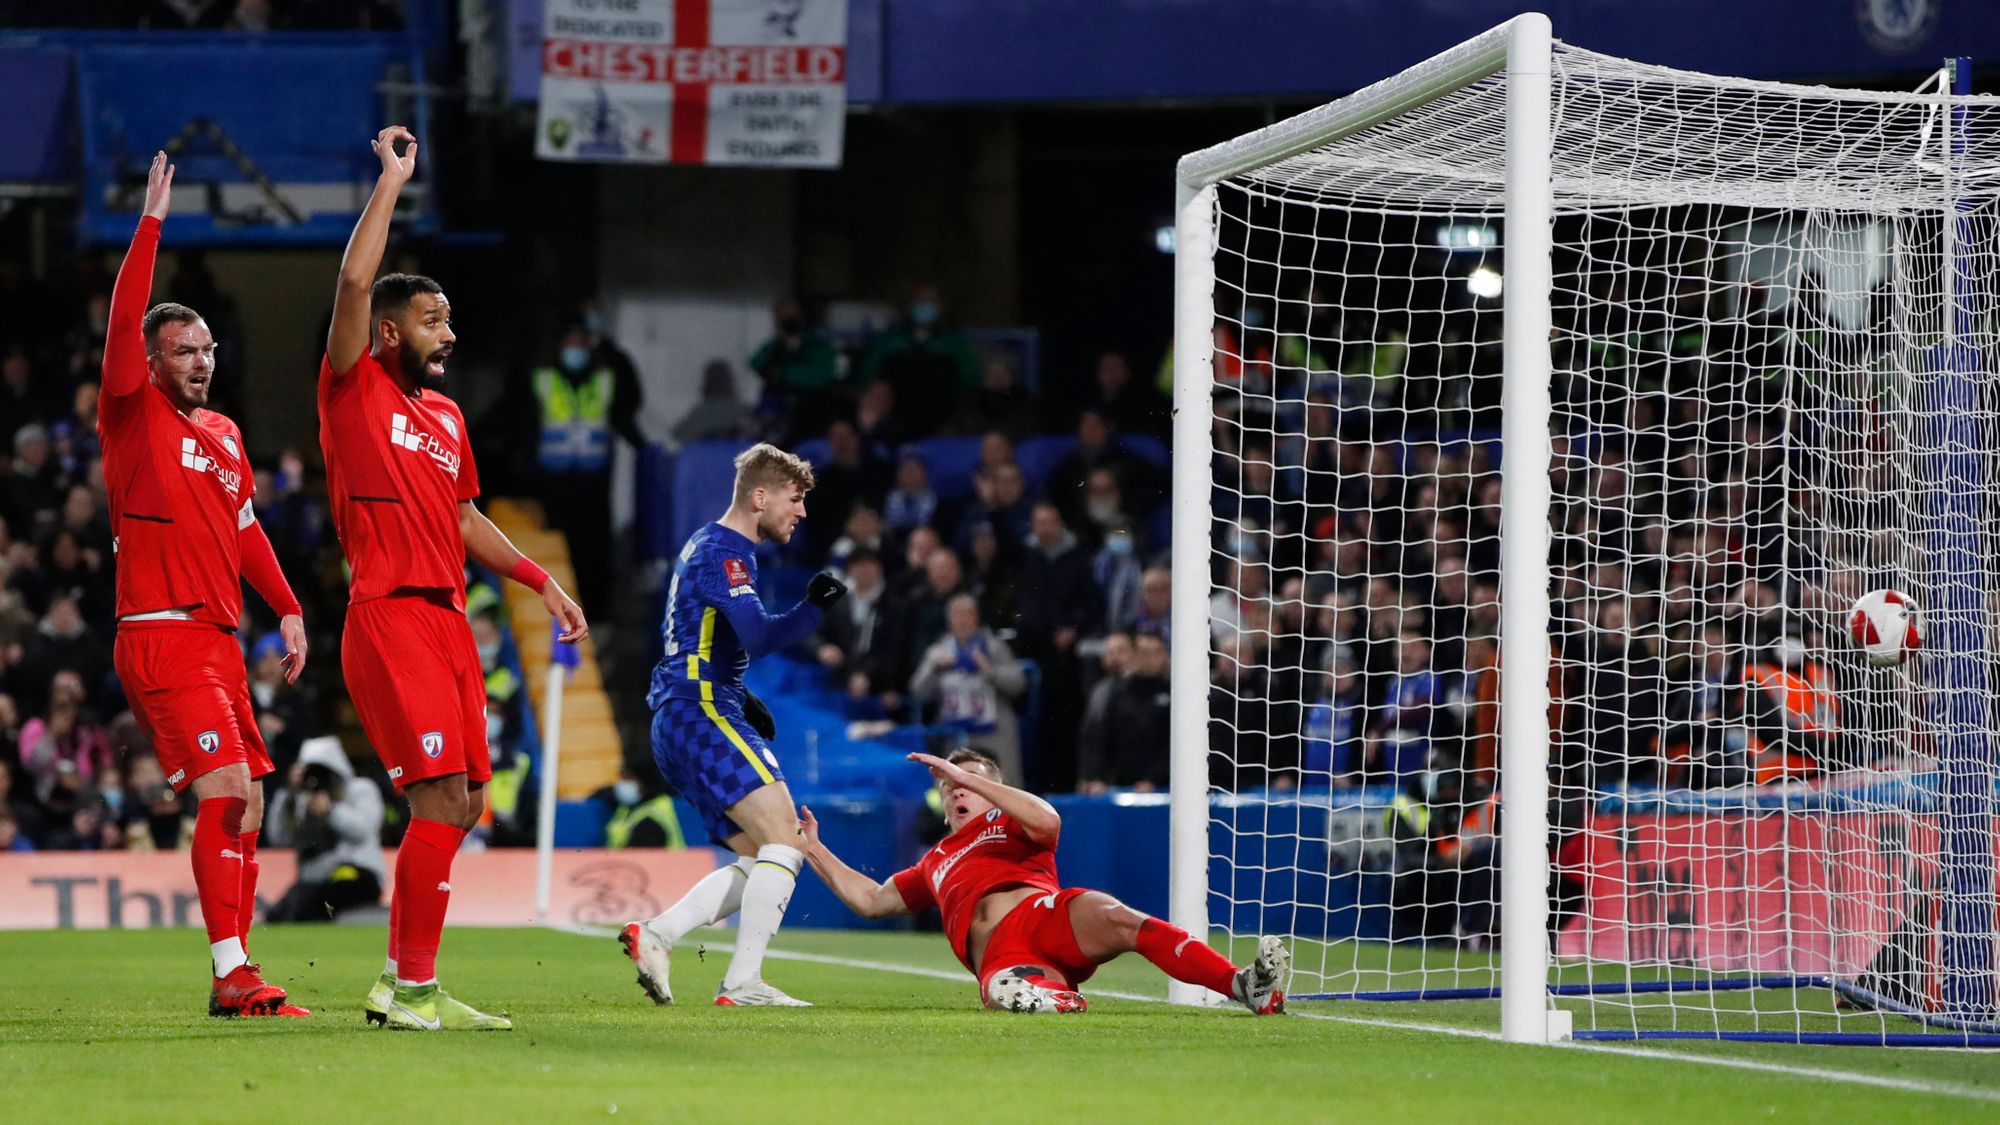 Chelsea avanzó a la cuarta ronda de la FA Cup sin despeinarse y con goleada